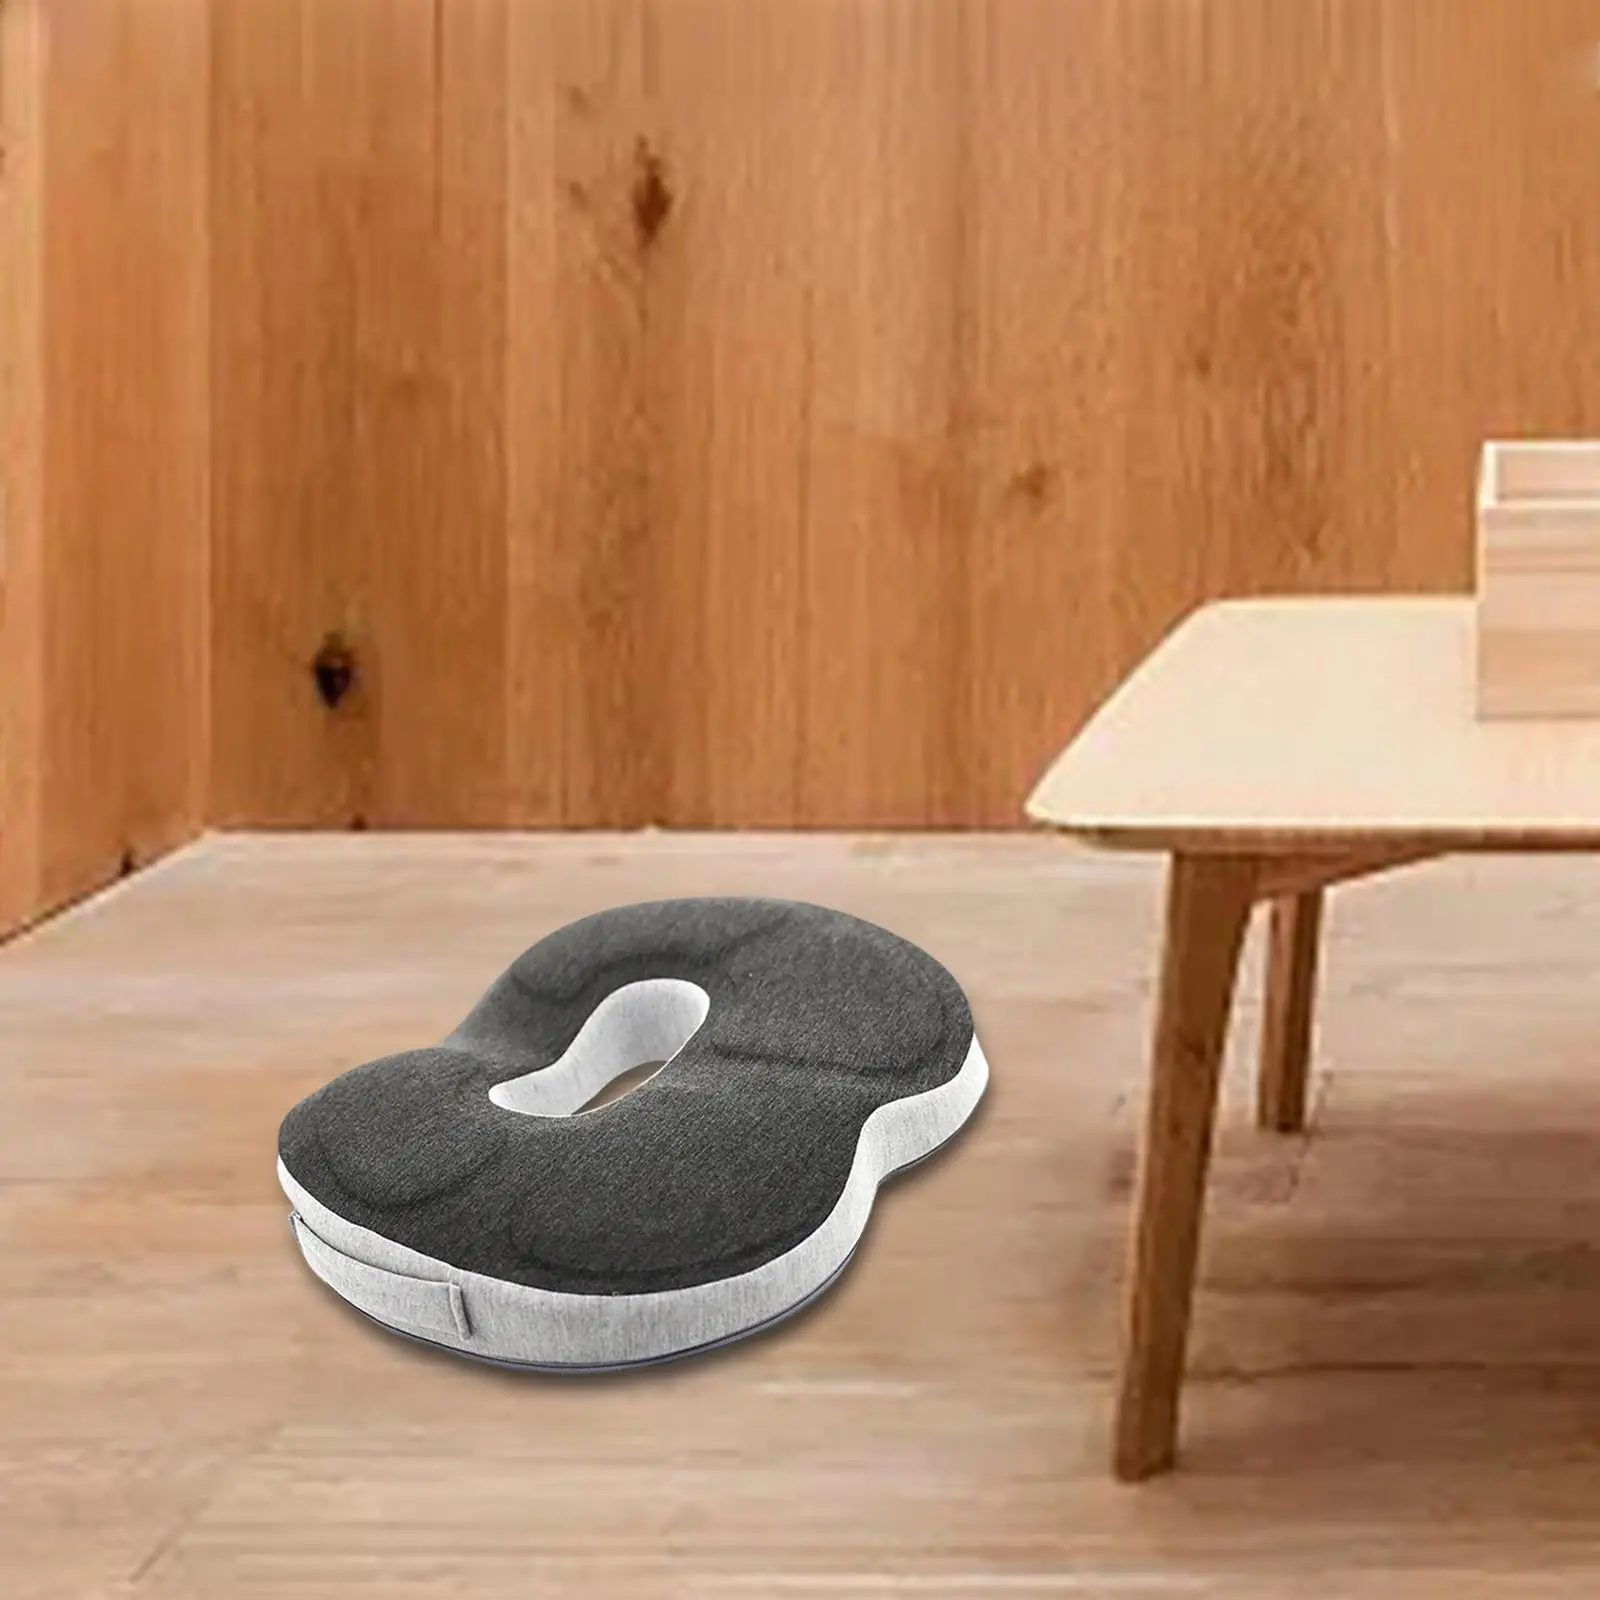 Breathable Donut Seat Cushion Memory Foam Comfortable Donut Pillow Tailbone Cushion Chair Cushion Seat Cushion for Office Chair